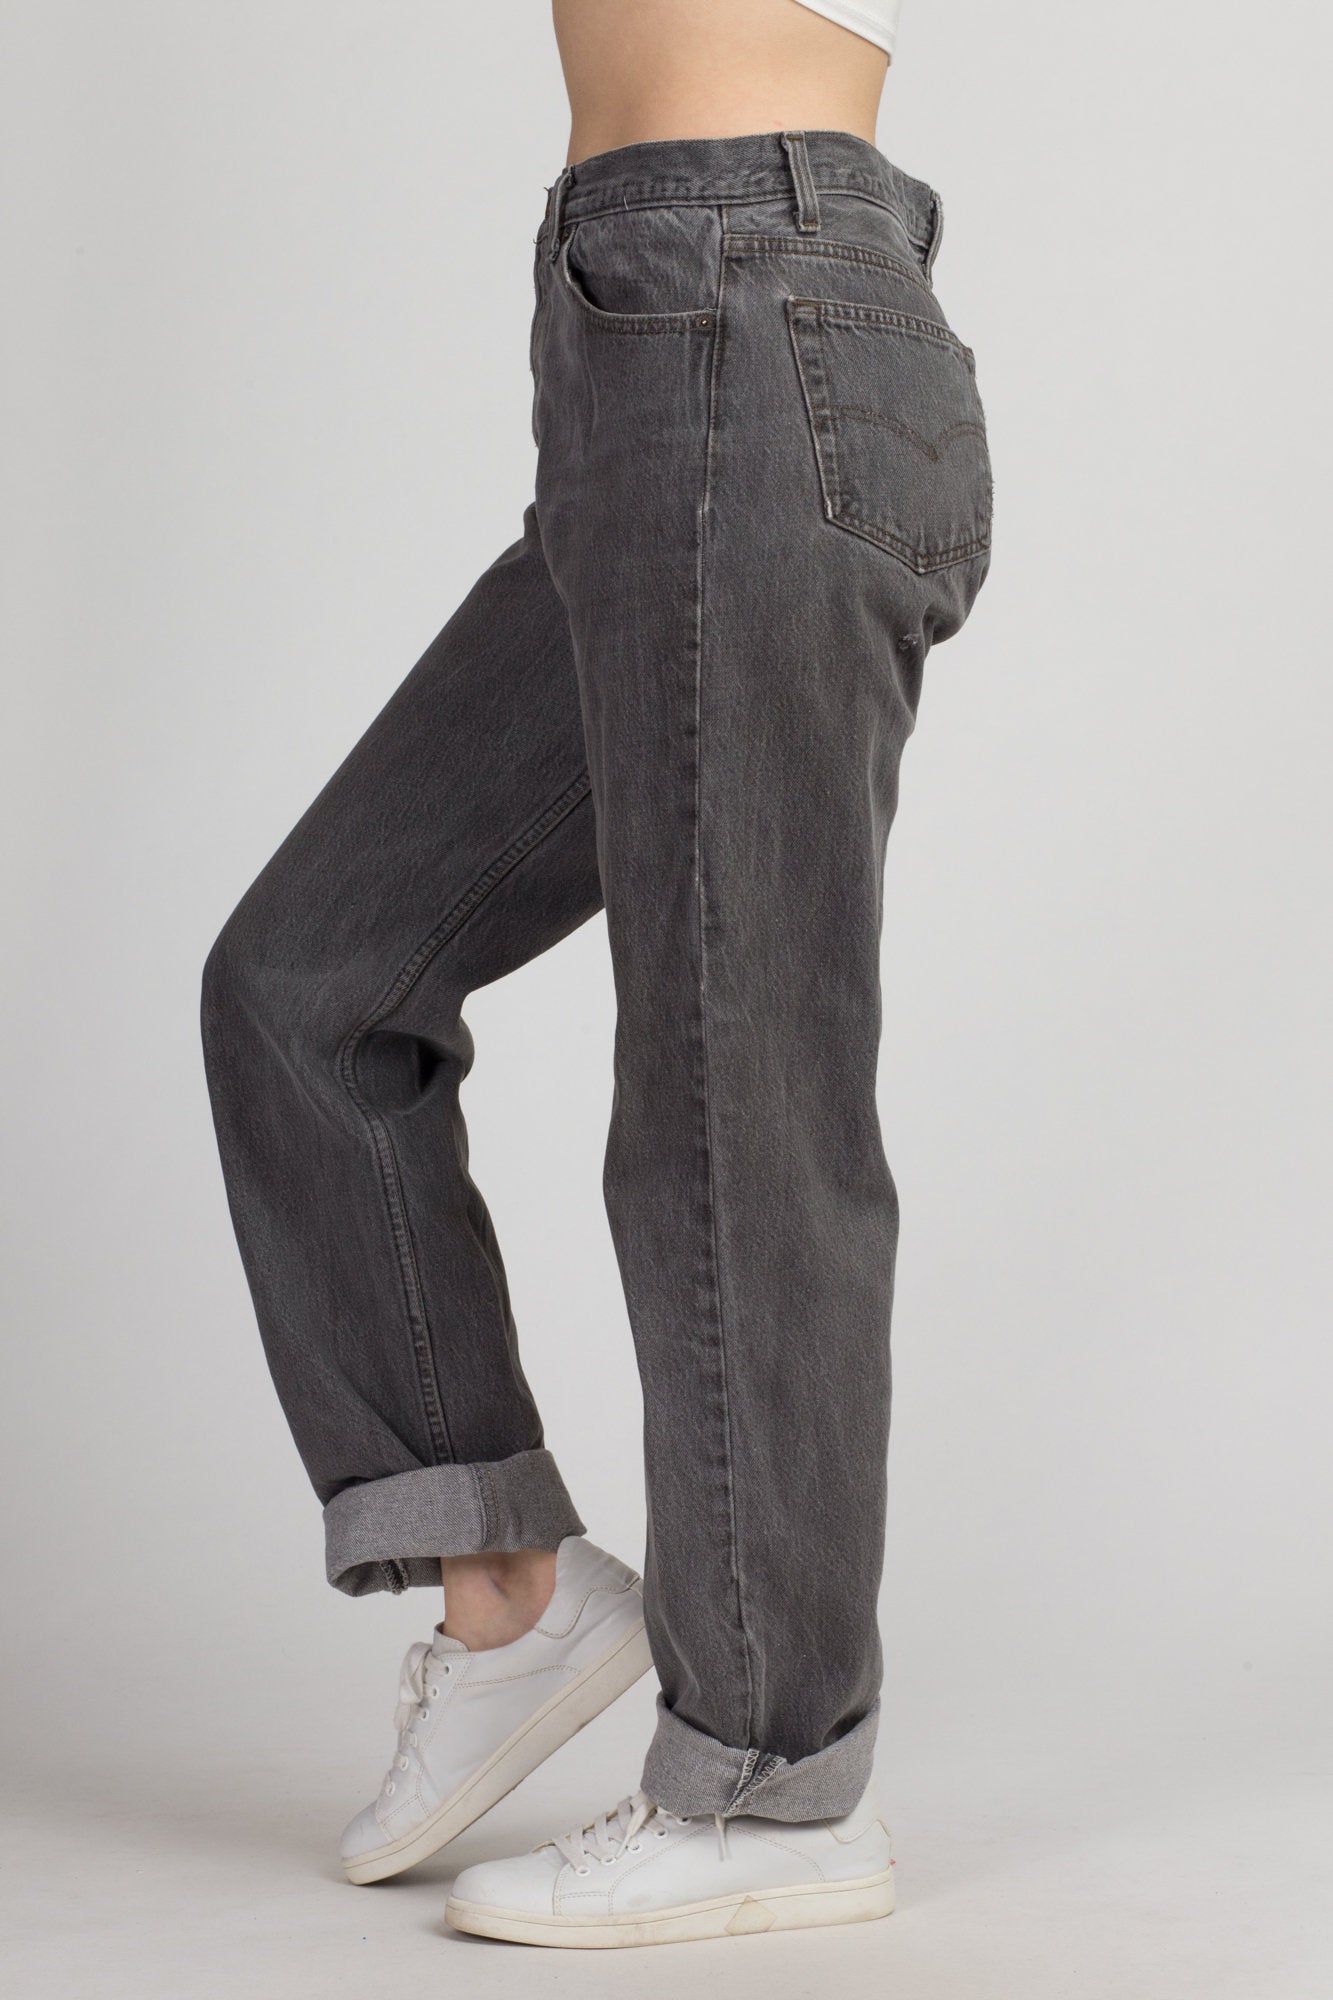 Vintage Levi's 501 Black Denim Jeans - 36x34